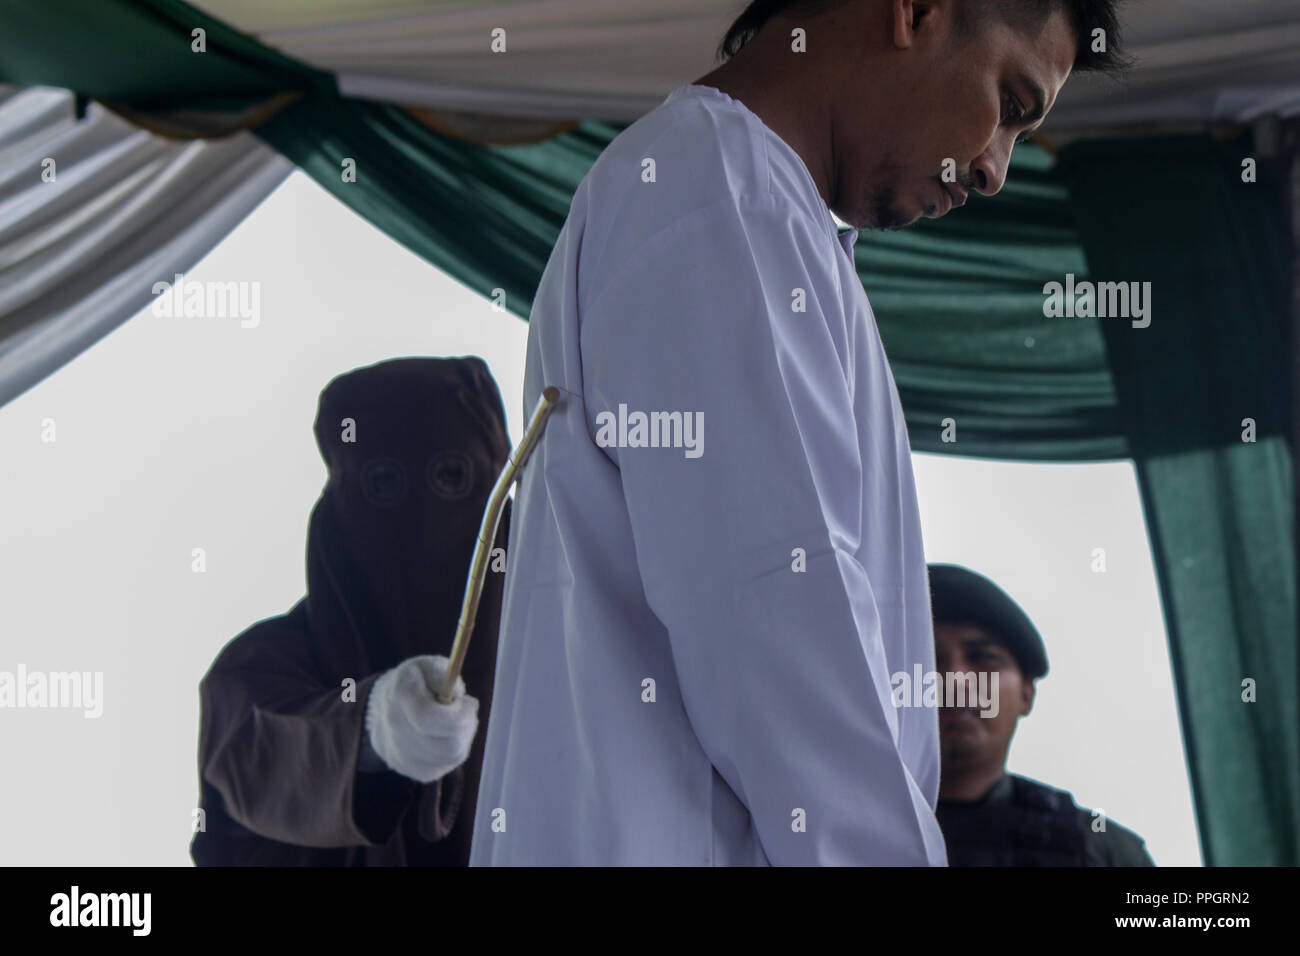 Lhokseumawe, Aceh, Indonesien. 25 Sep, 2018. Ein Mann gesehen in öffentlichen gepeitscht wird für das Spielen der betrachtet wird, die islamische Scharia zu verletzen. Obgleich betrachtet die Internationale Konvention gegen die grausame, unmenschliche oder Folter und Grausamkeit zu verletzen. Aceh, einer der Provinzen in Indonesien, die darauf besteht, die Durchführung von Schlagsahne als eine Provinz der islamischen Scharia. Credit: Maskur hat/SOPA Images/ZUMA Draht/Alamy leben Nachrichten Stockfoto